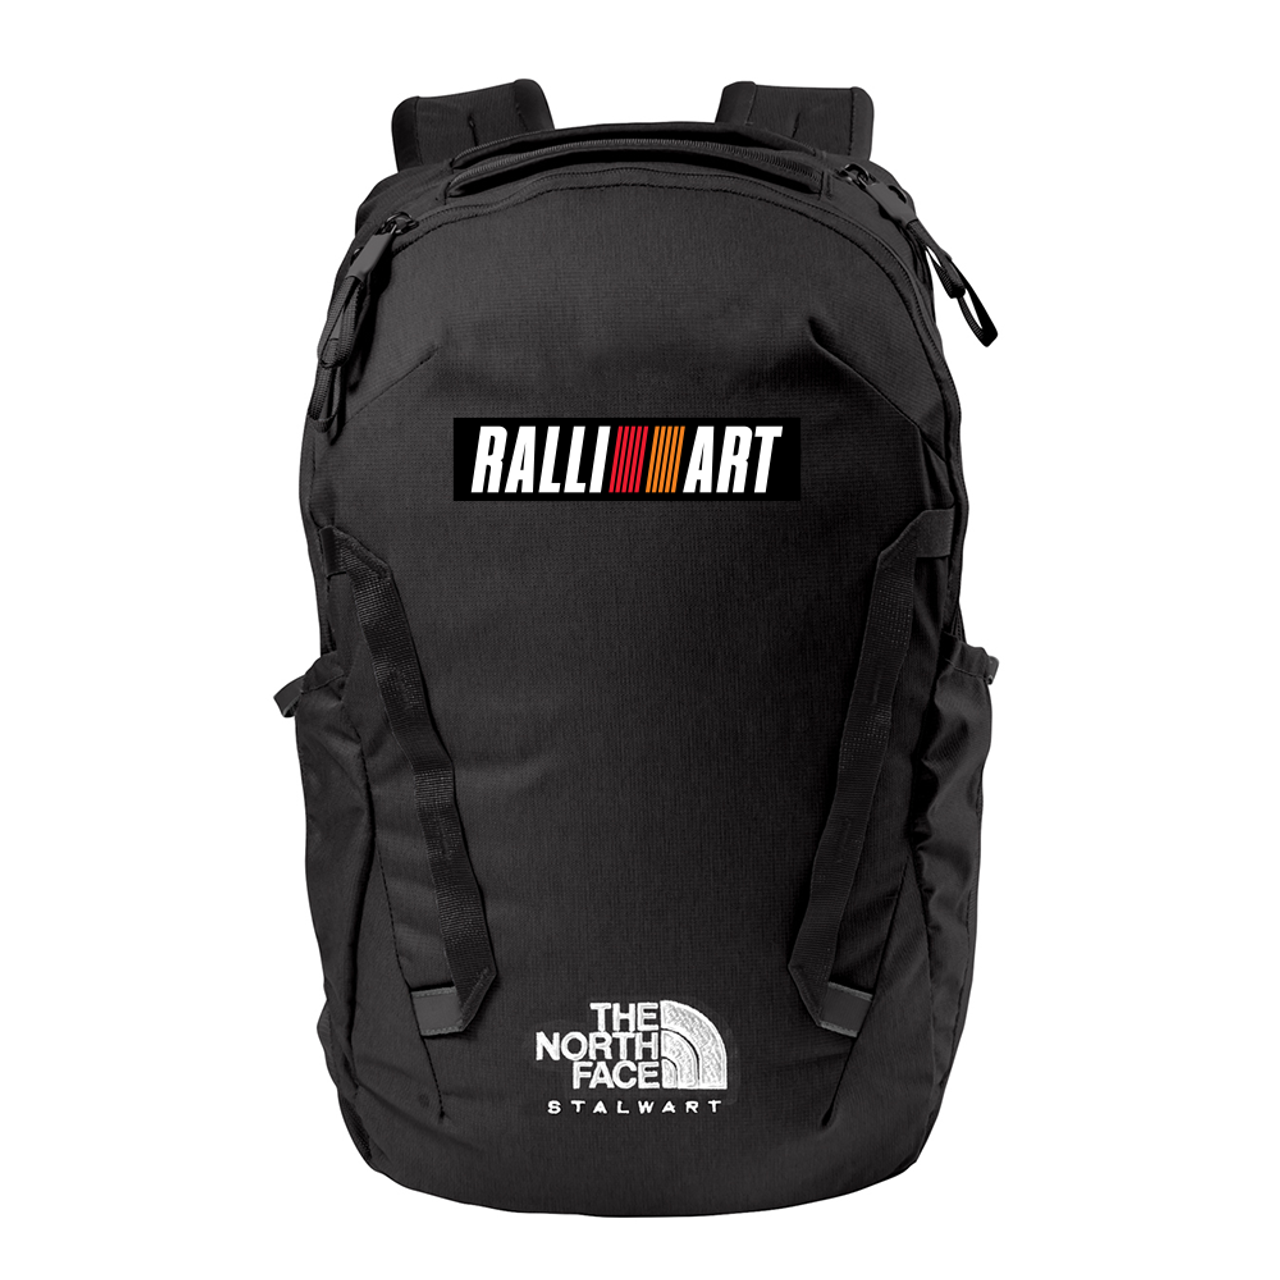 RALLIART Backpack